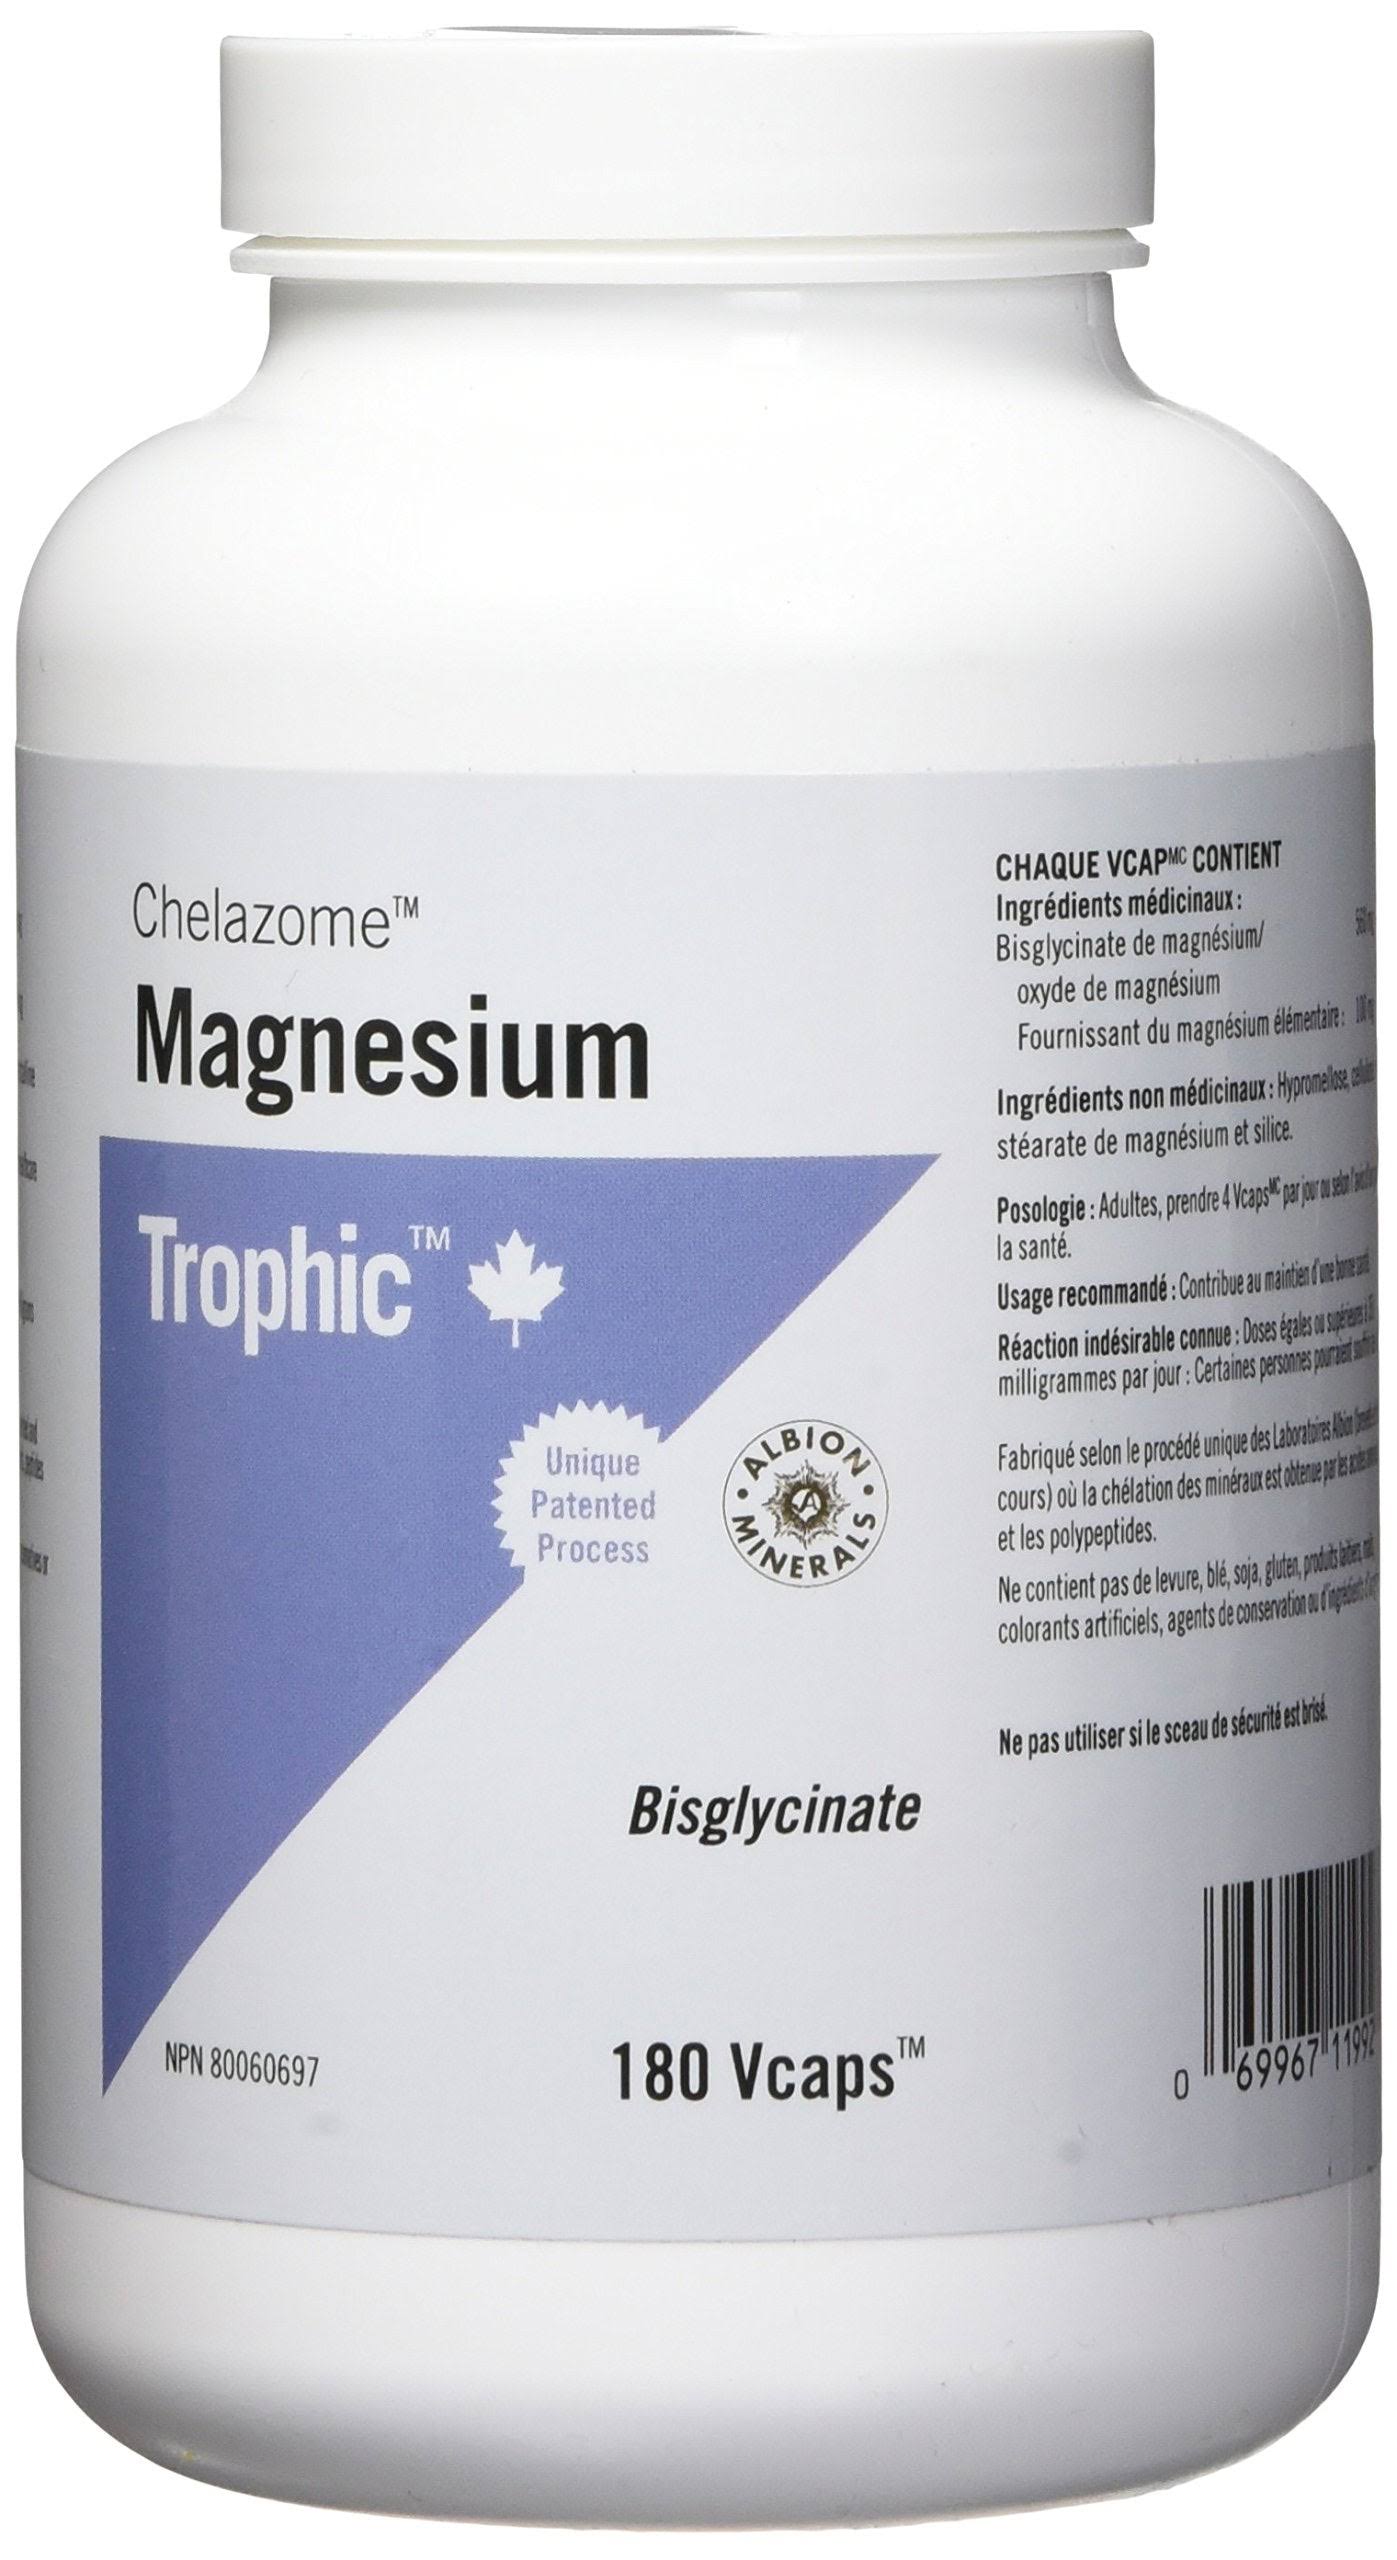 Trophic - Magnesium Chelazome